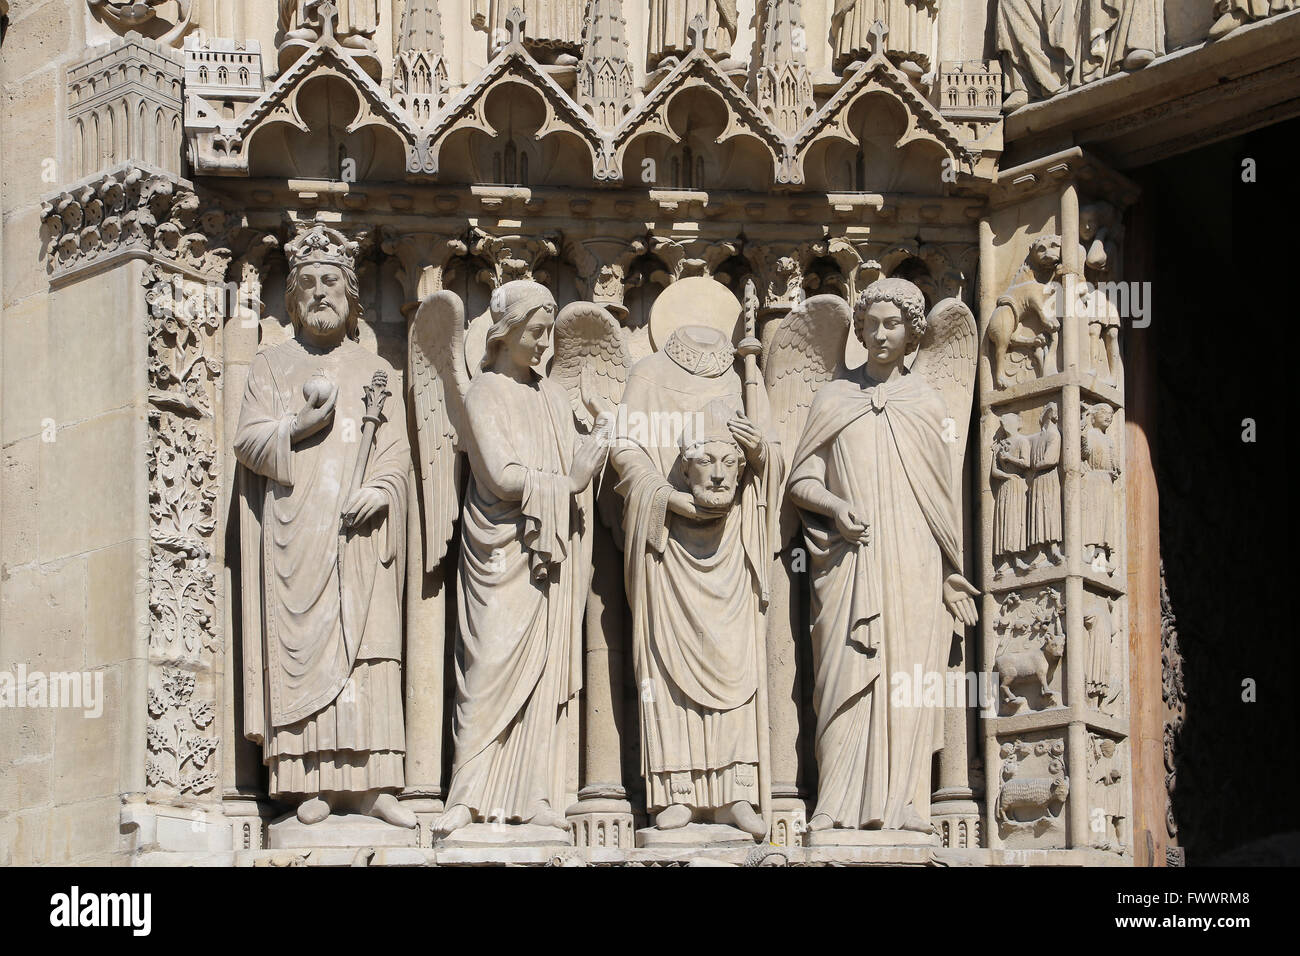 La Francia. Parigi.La facciata occidentale della cattedrale di Notre Dame. Inizio gotico. Xiii c. Il restauro, XIX c. Portale della Vergine. Foto Stock